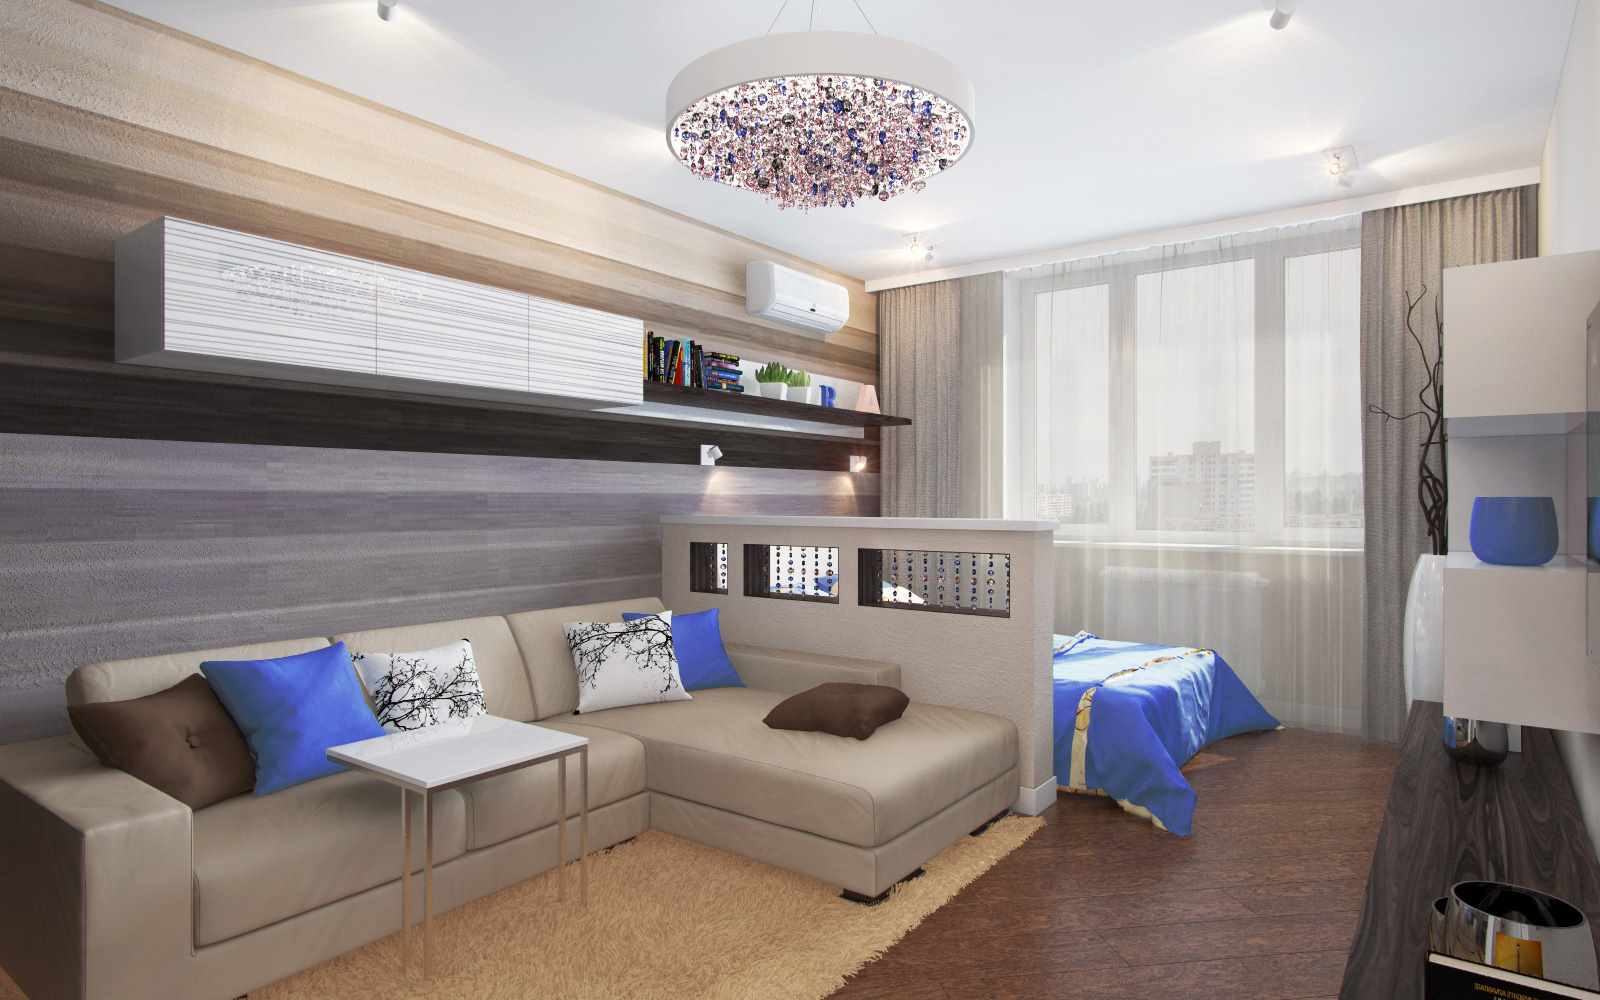 فكرة تصميم مشرق لغرفة المعيشة 19-20 متر مربع